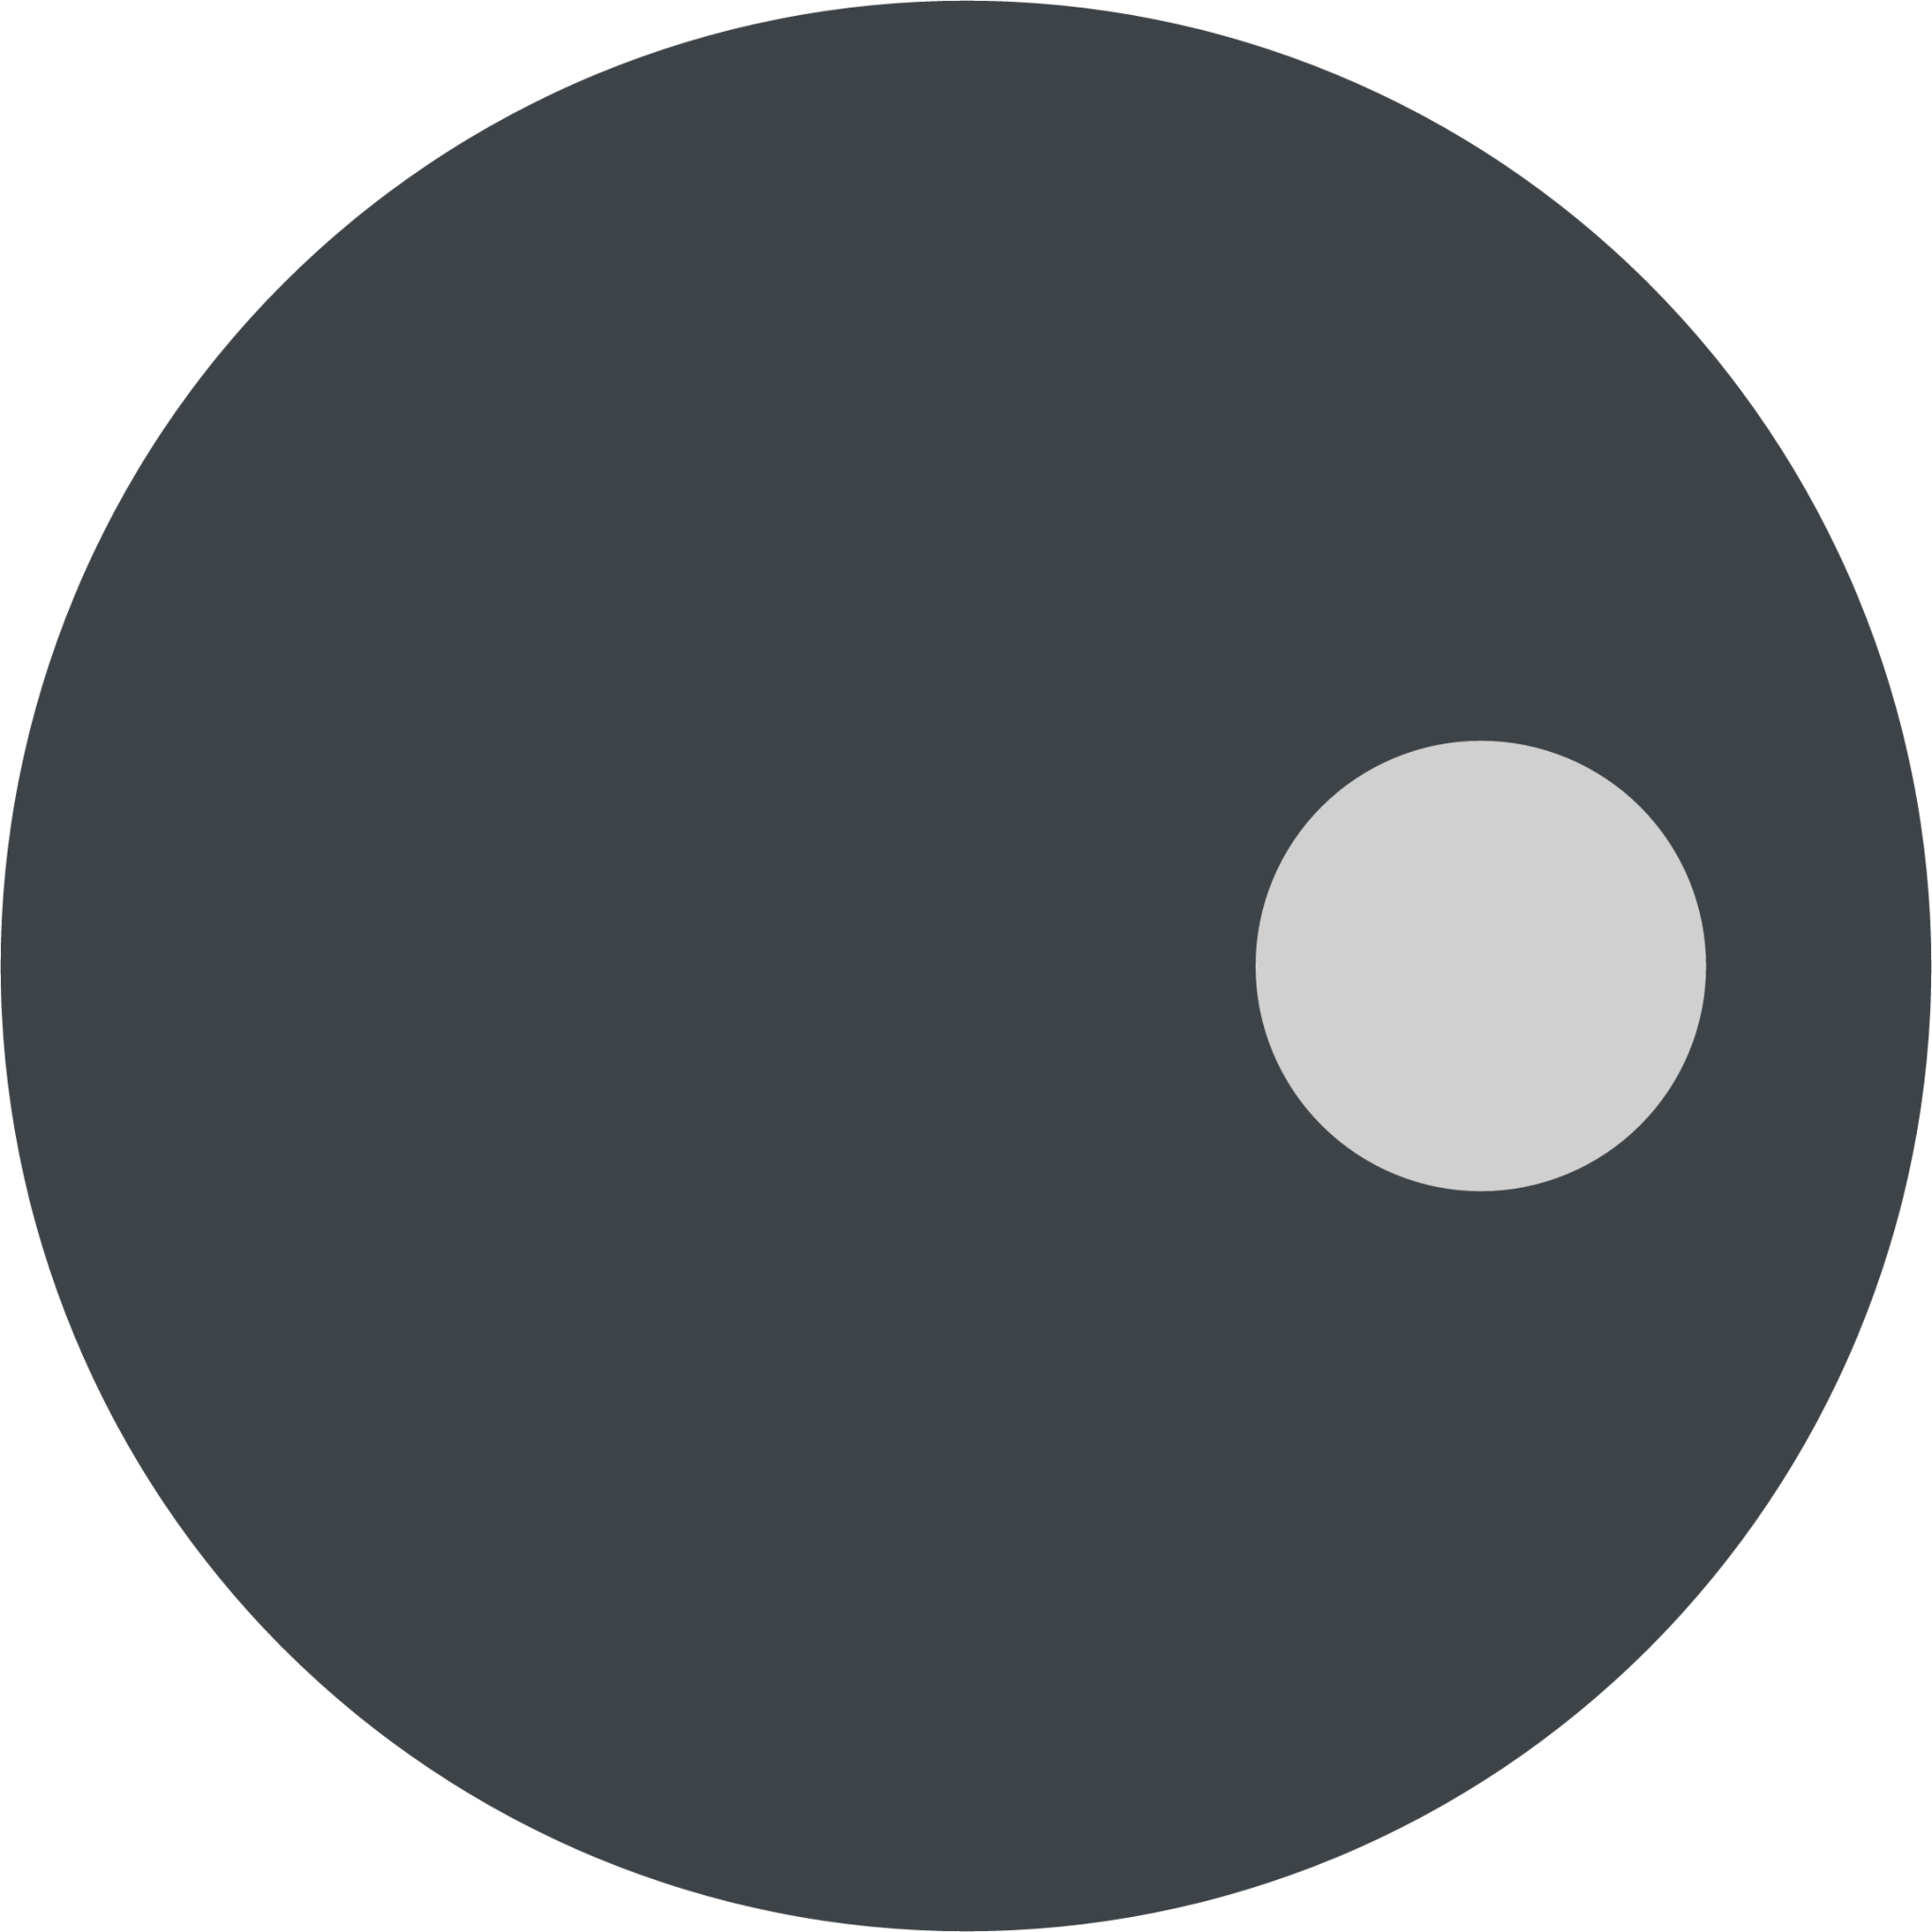 black Go piece with dot emoji